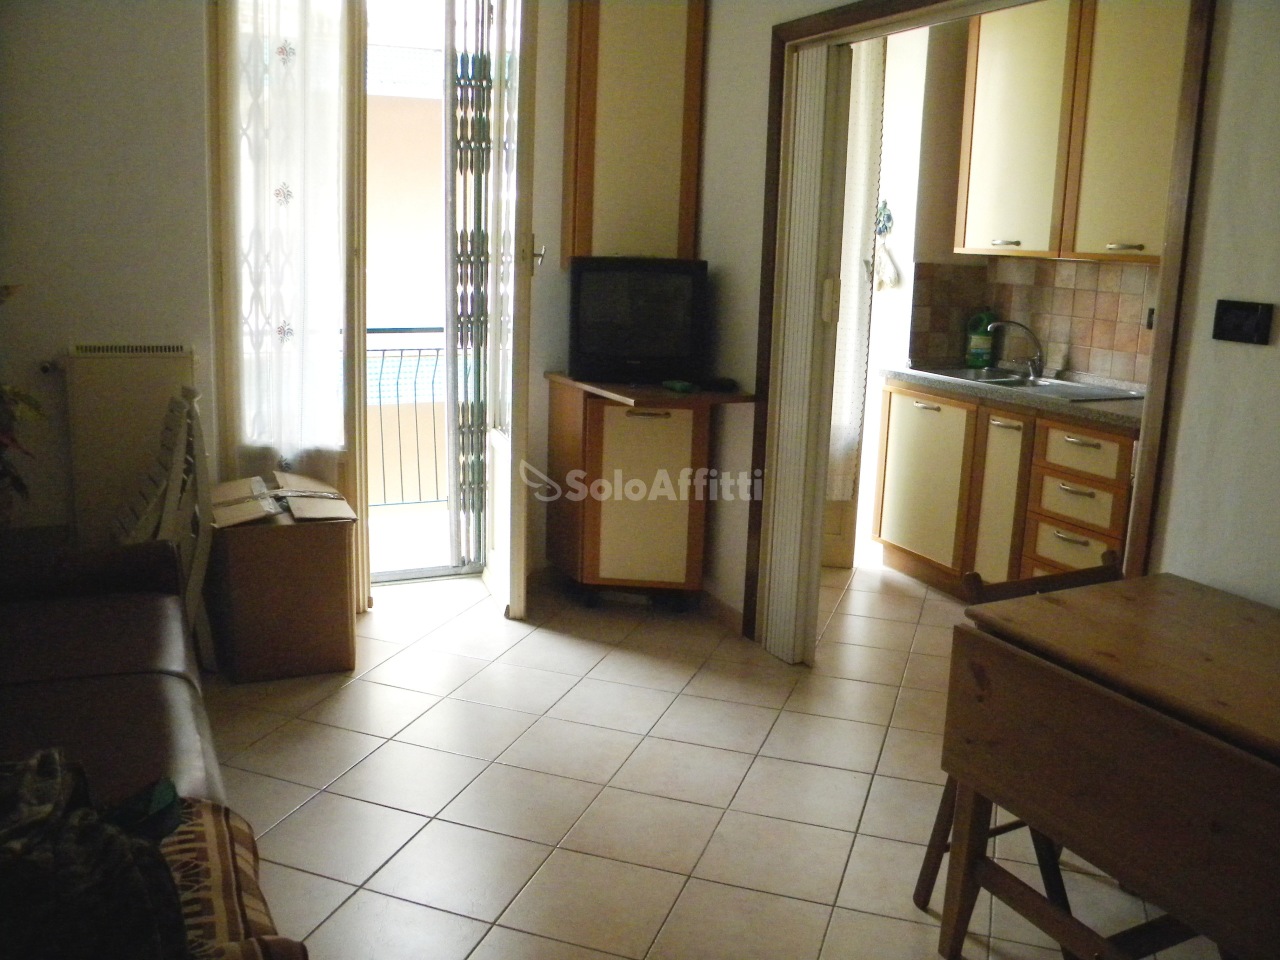 Appartamento in affitto a Rapallo, 2 locali, prezzo € 450 | PortaleAgenzieImmobiliari.it